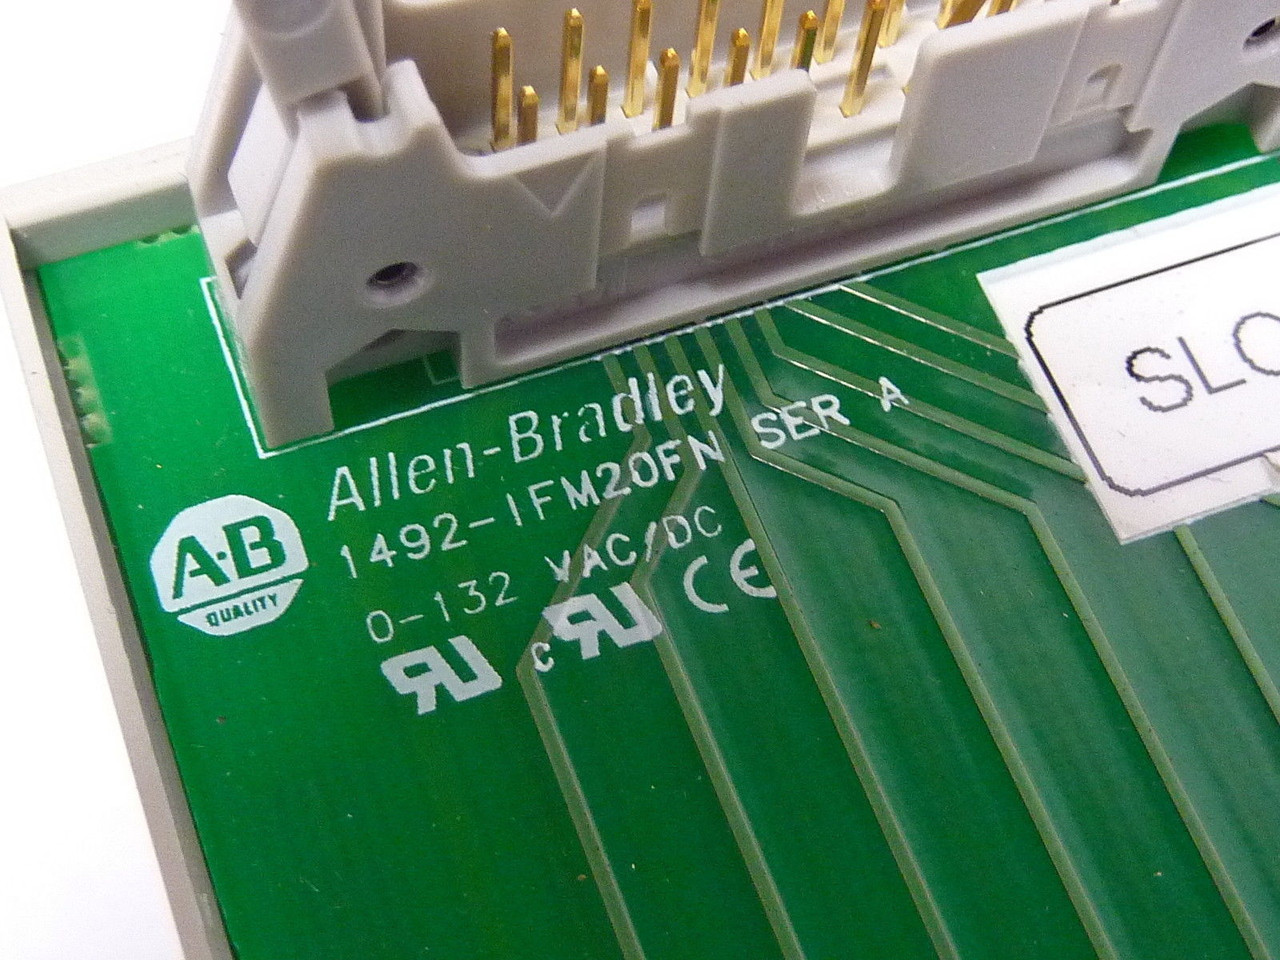 Allen-Bradley 1492-IFM20F-N Digital IFM 132 VAC USED